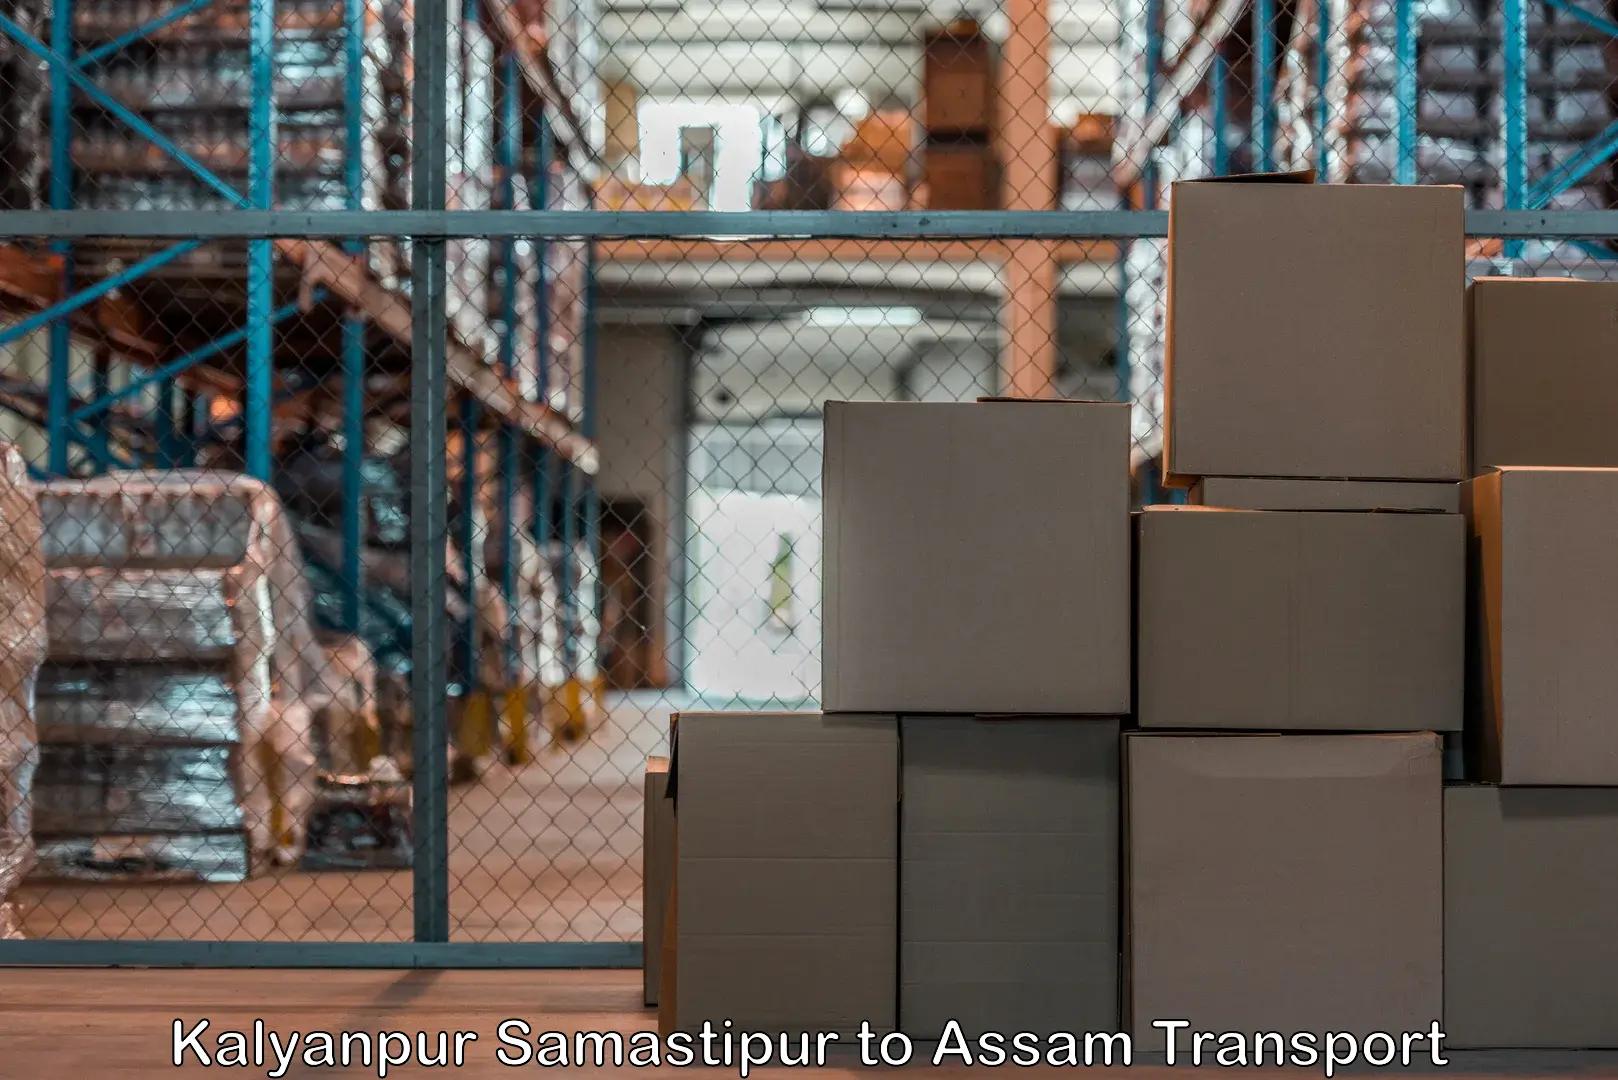 Bike shipping service Kalyanpur Samastipur to Biswanath